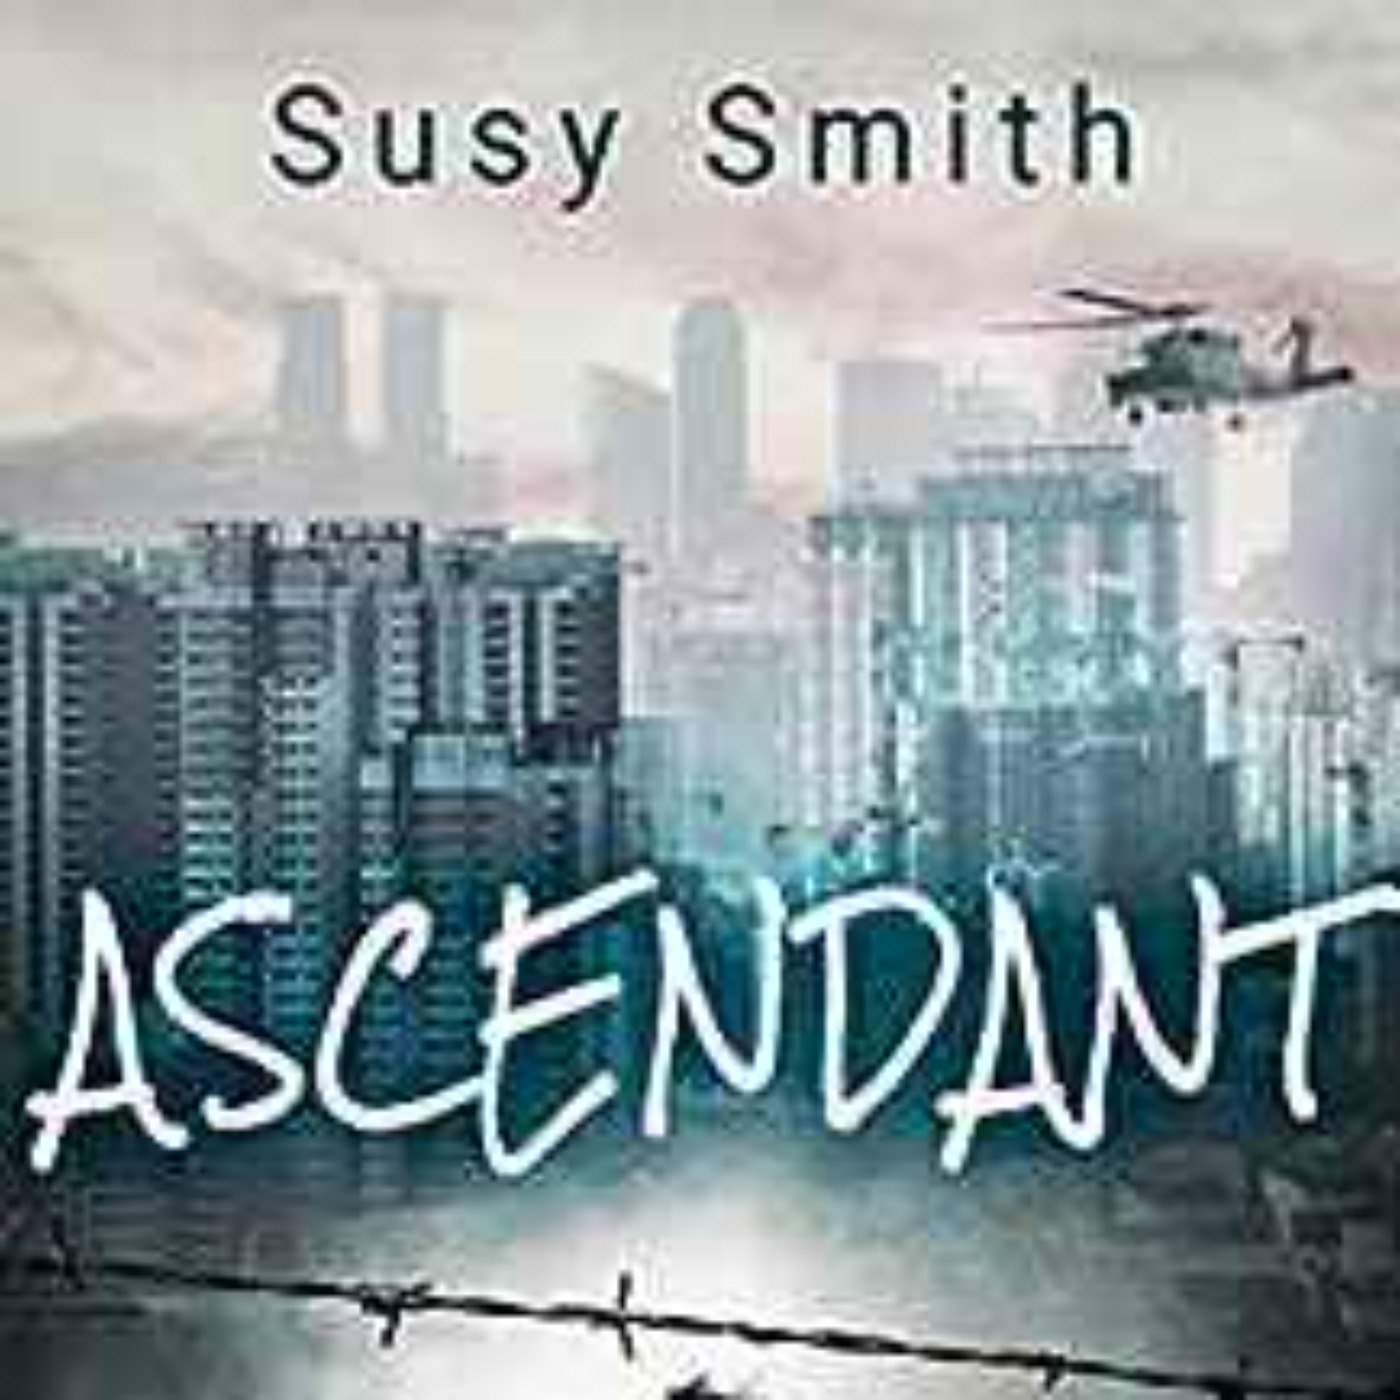 Susy Smith - Ascendant